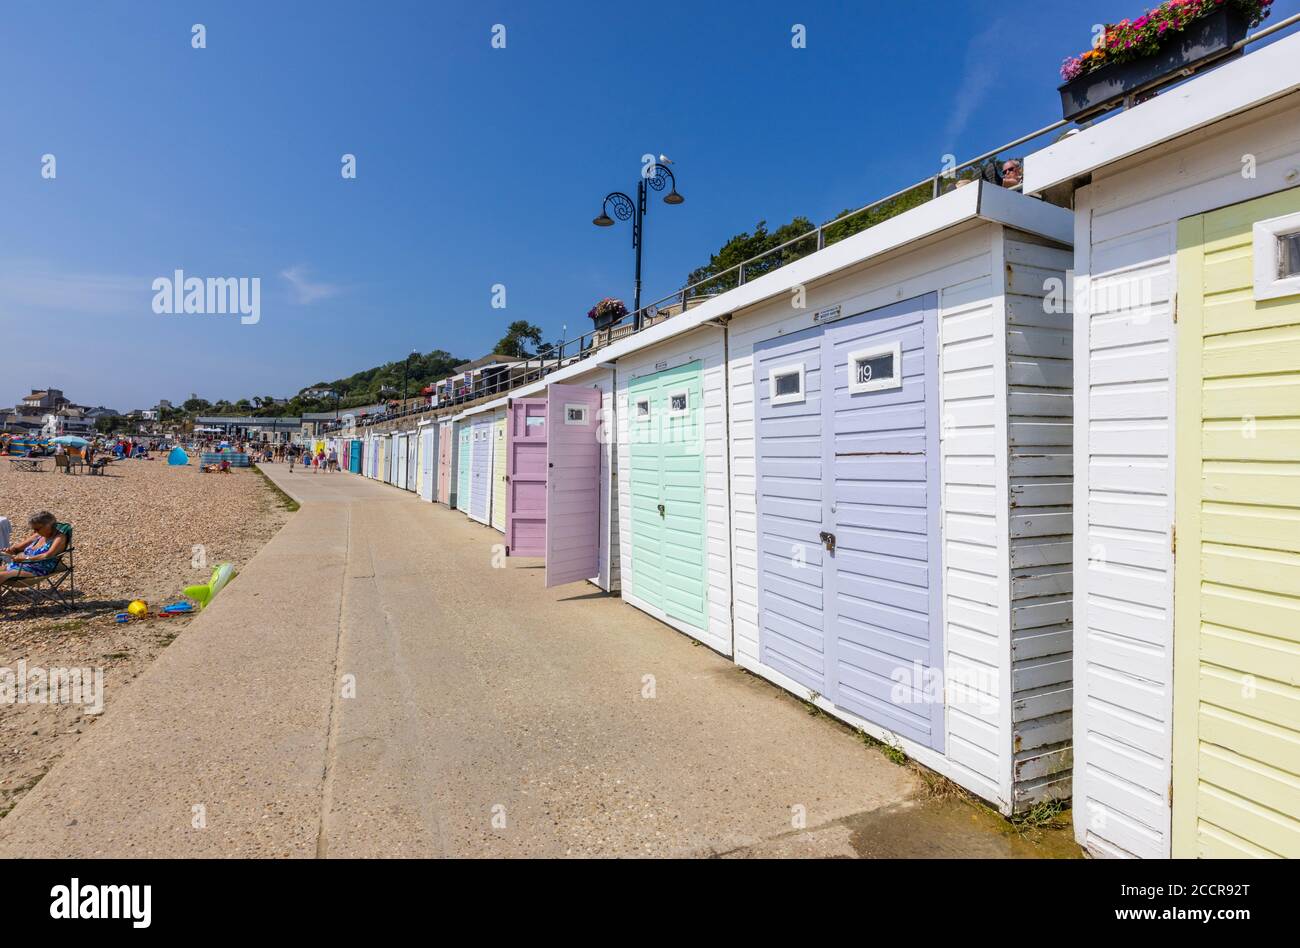 Huttes de plage le long de la promenade Marine Parade à Lyme Regis, une station balnéaire populaire de la côte jurassique à Dorset, au sud-ouest de l'Angleterre Banque D'Images